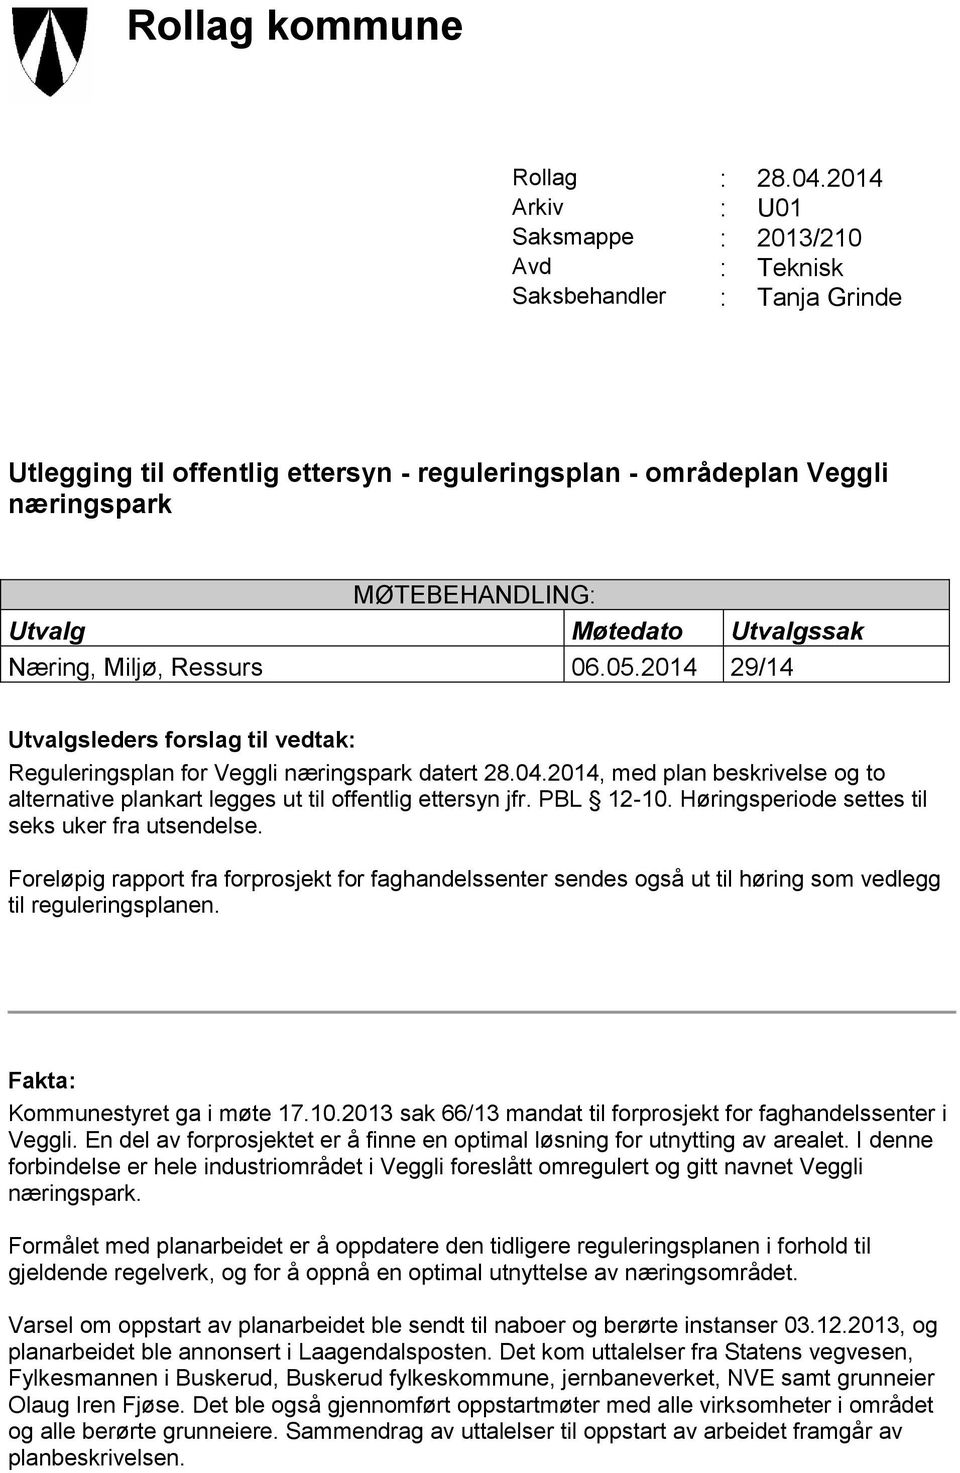 Møtedato Utvalgssak Næring, Miljø, Ressurs 06.05.2014 29/14 Utvalgsleders forslag til vedtak: Reguleringsplan for Veggli næringspark datert 28.04.